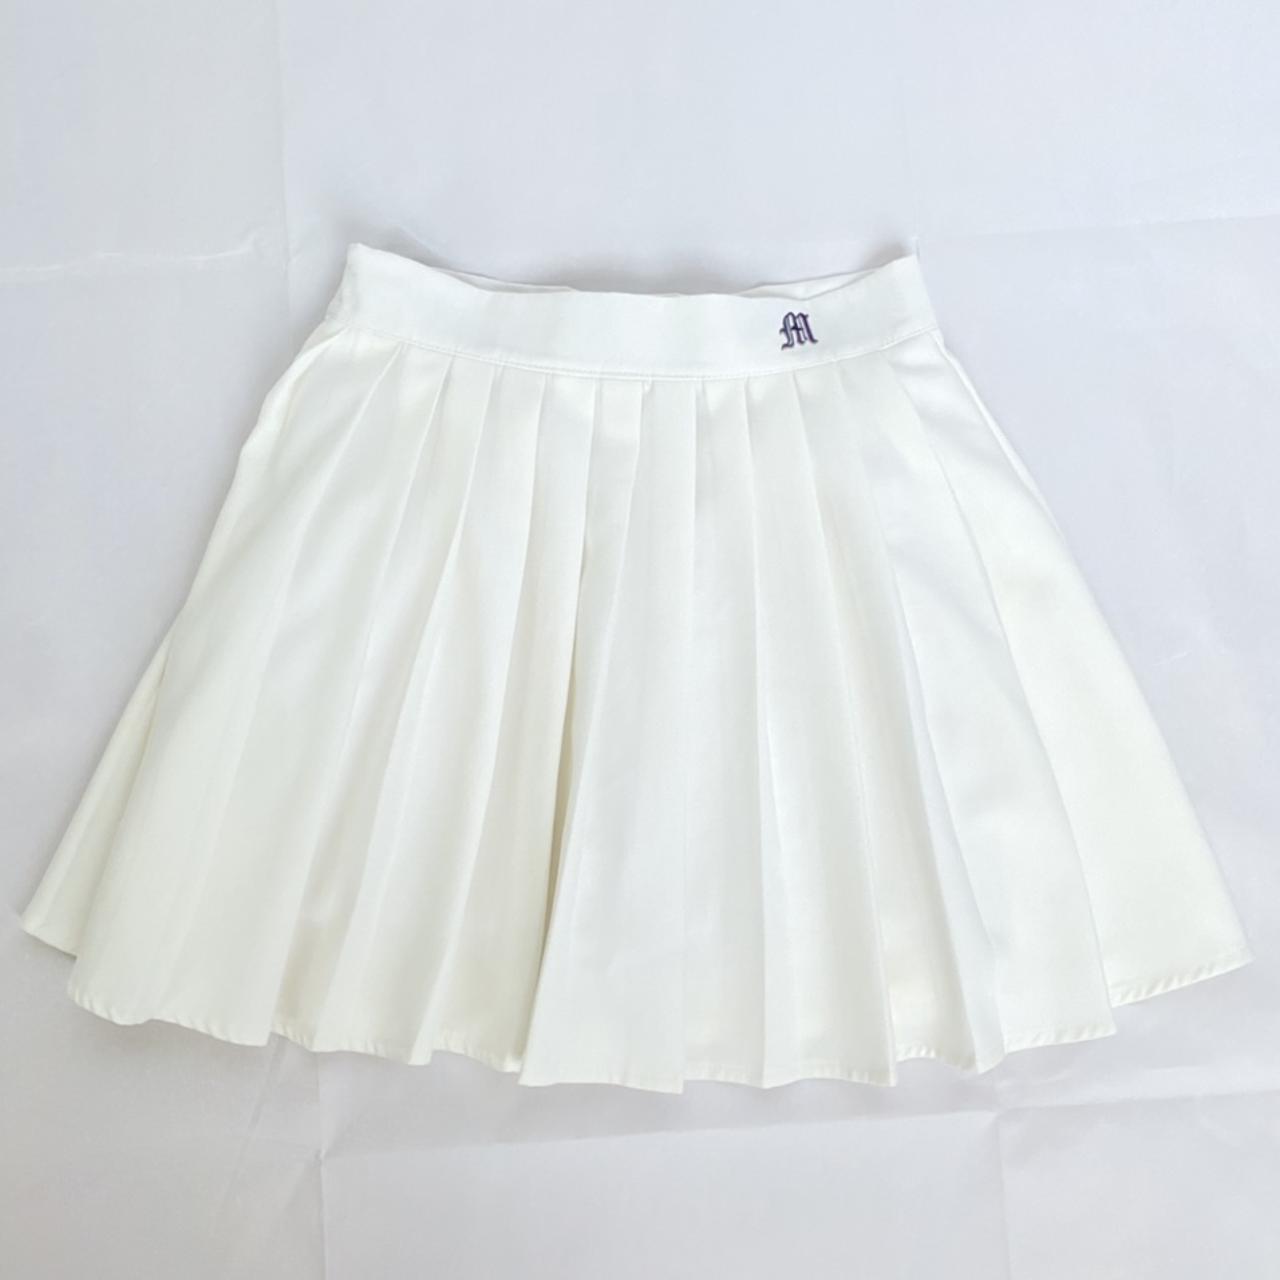 Women's White and Black Skirt